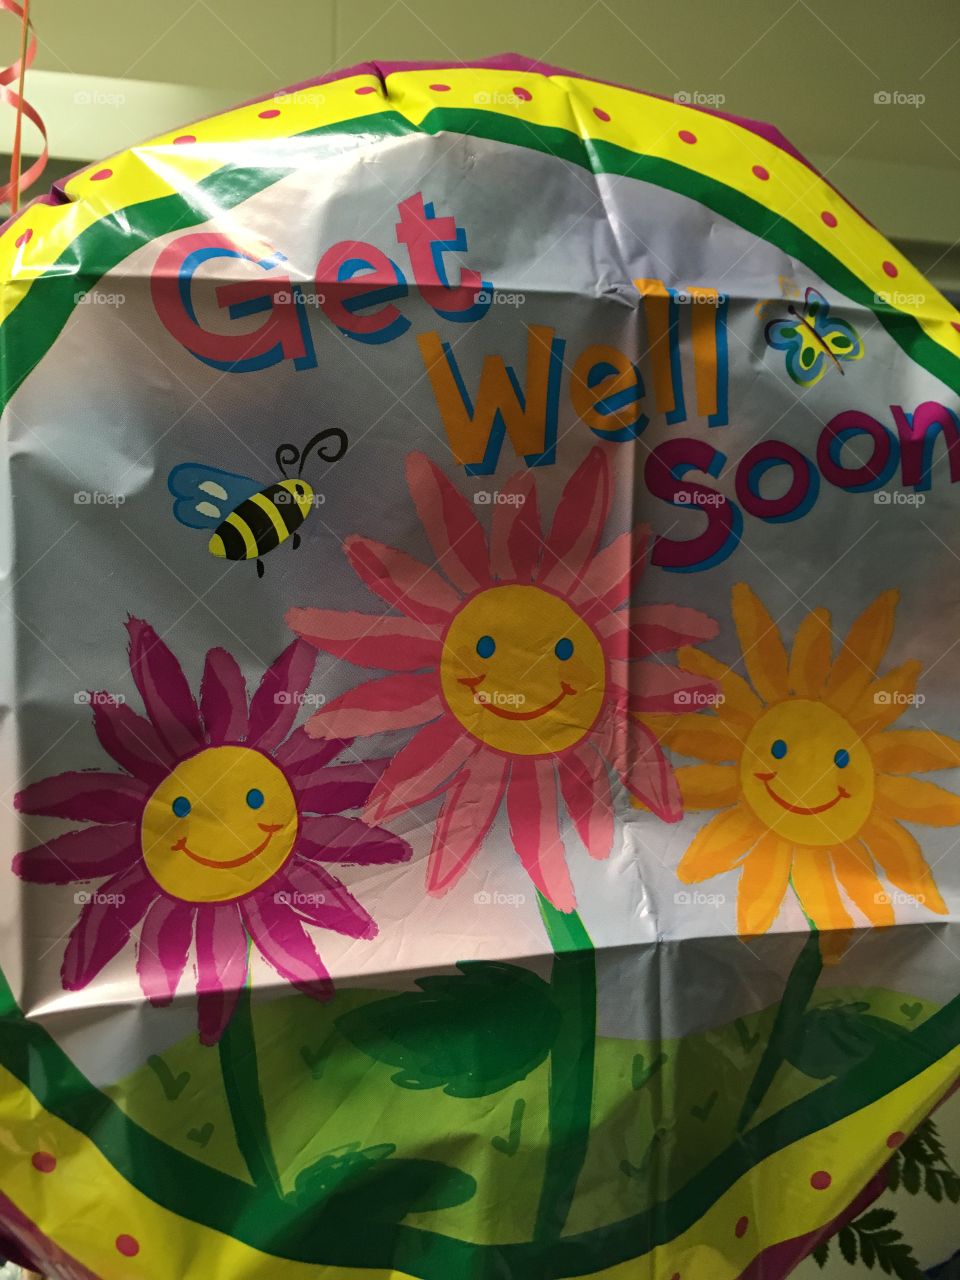 Get well balloon 